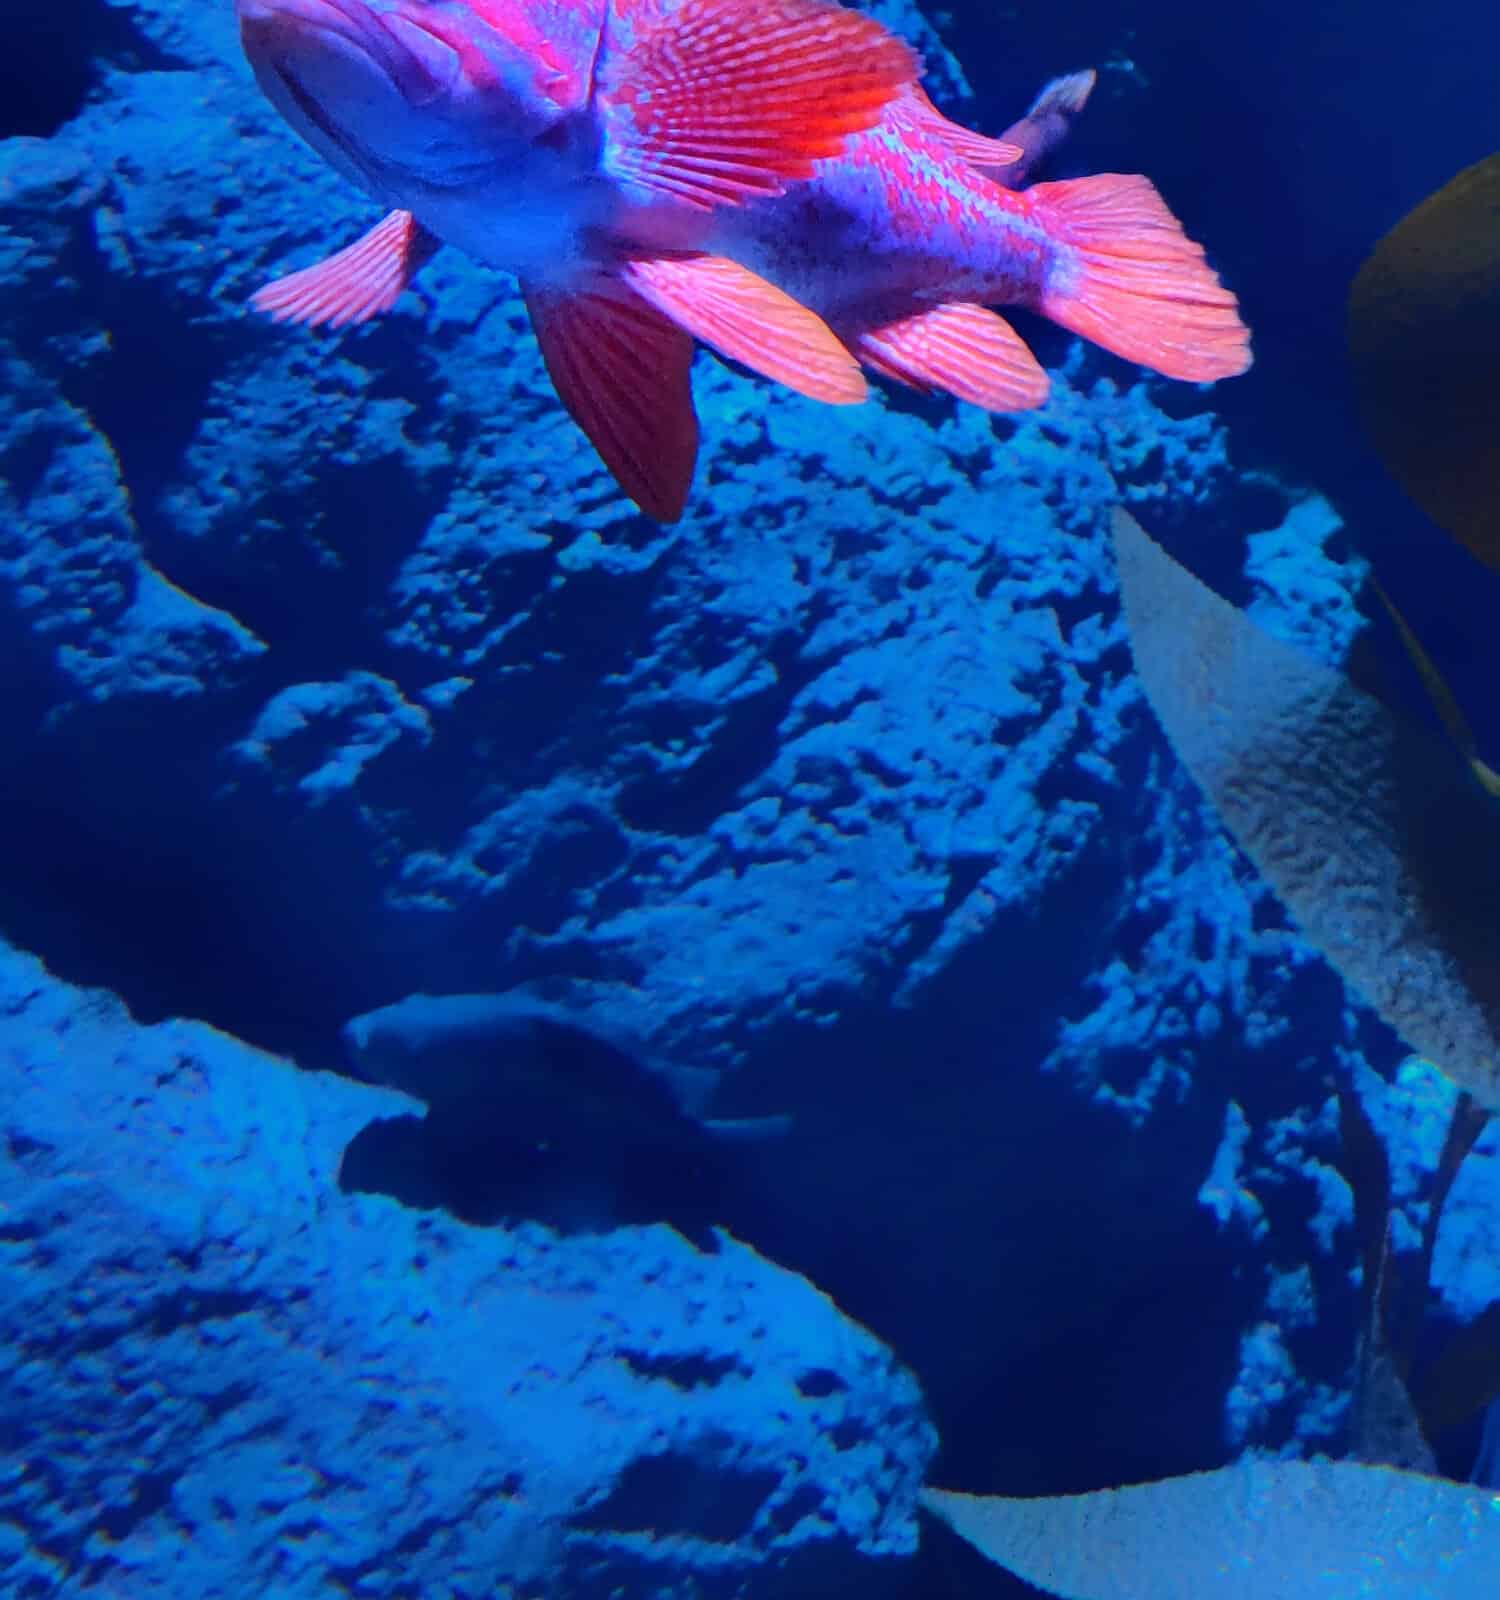 Vermillion rockfish swimming in the sea